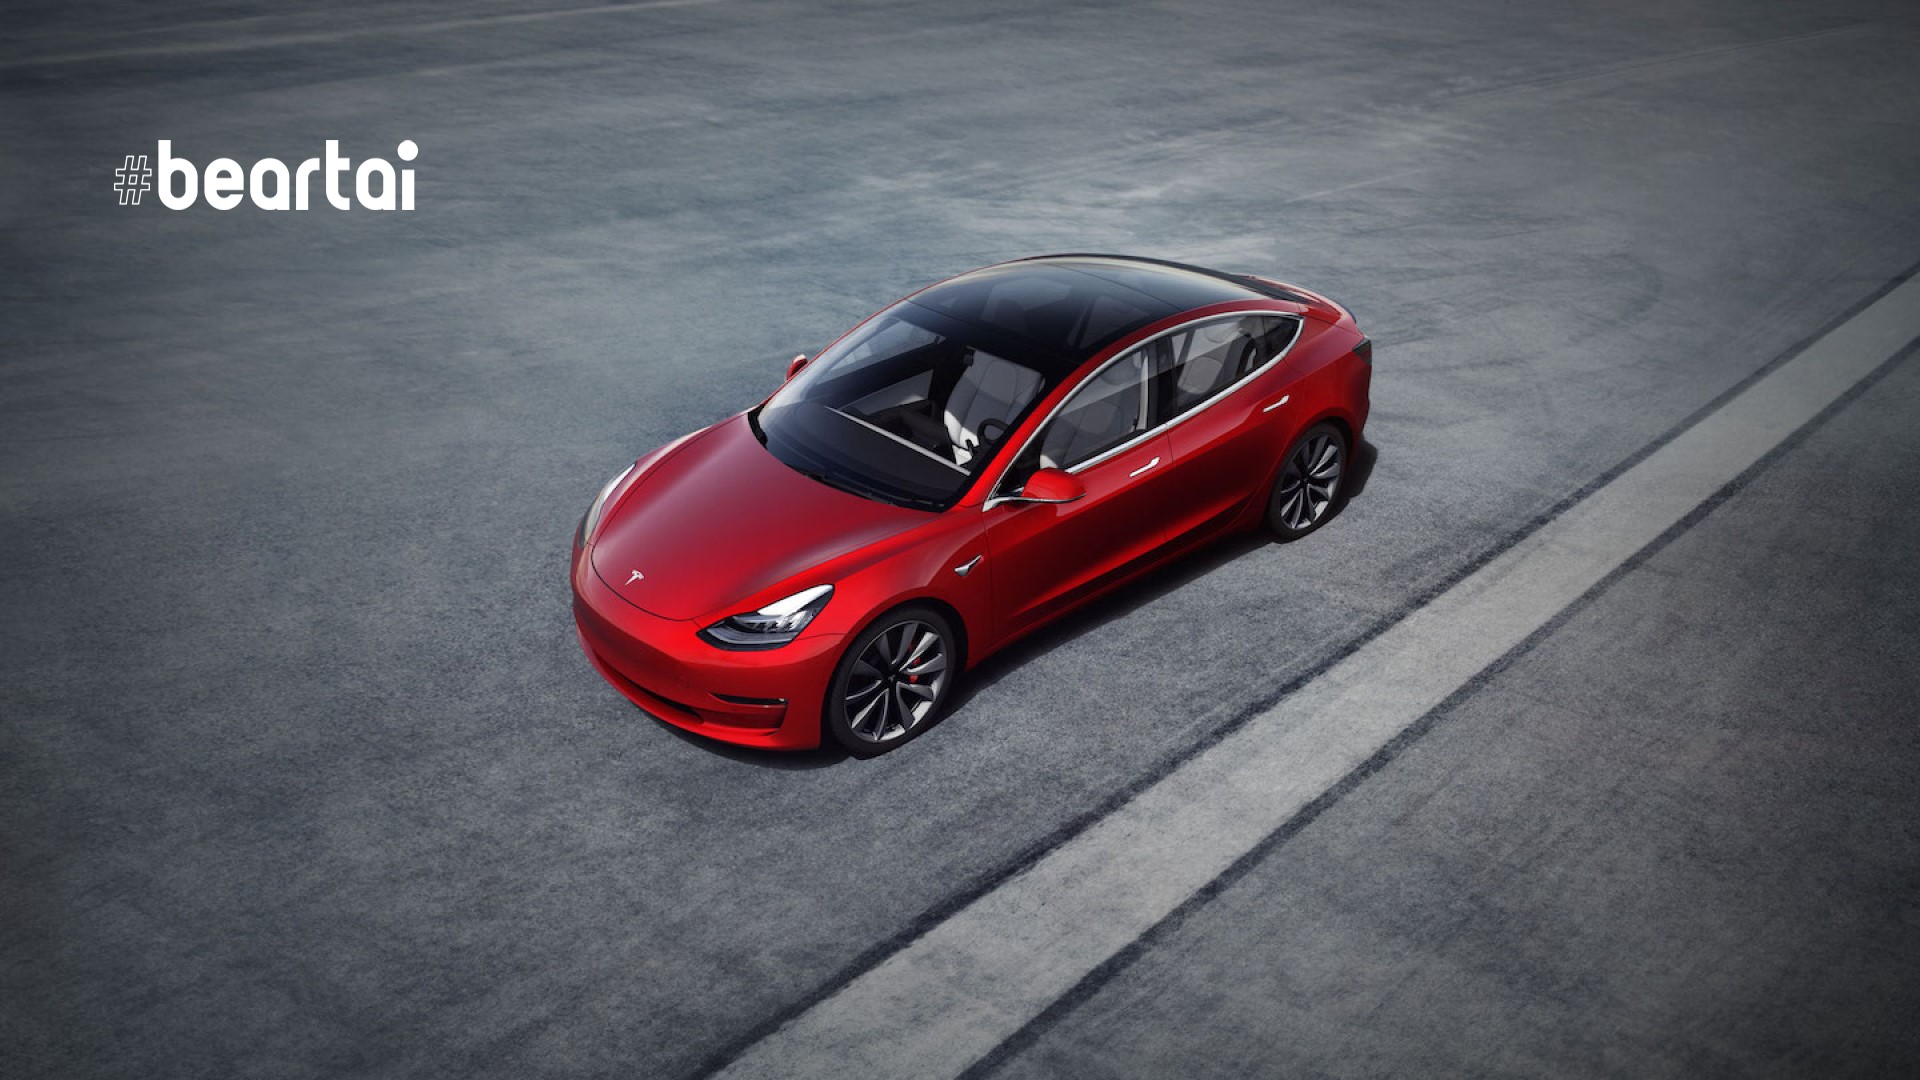 EPA แสดงการจัดอันดับประสิทธิภาพรถยนต์ไฟฟ้ารุ่นปี 2021 ที่มี Tesla อยู่แถวหน้าอีกครั้ง